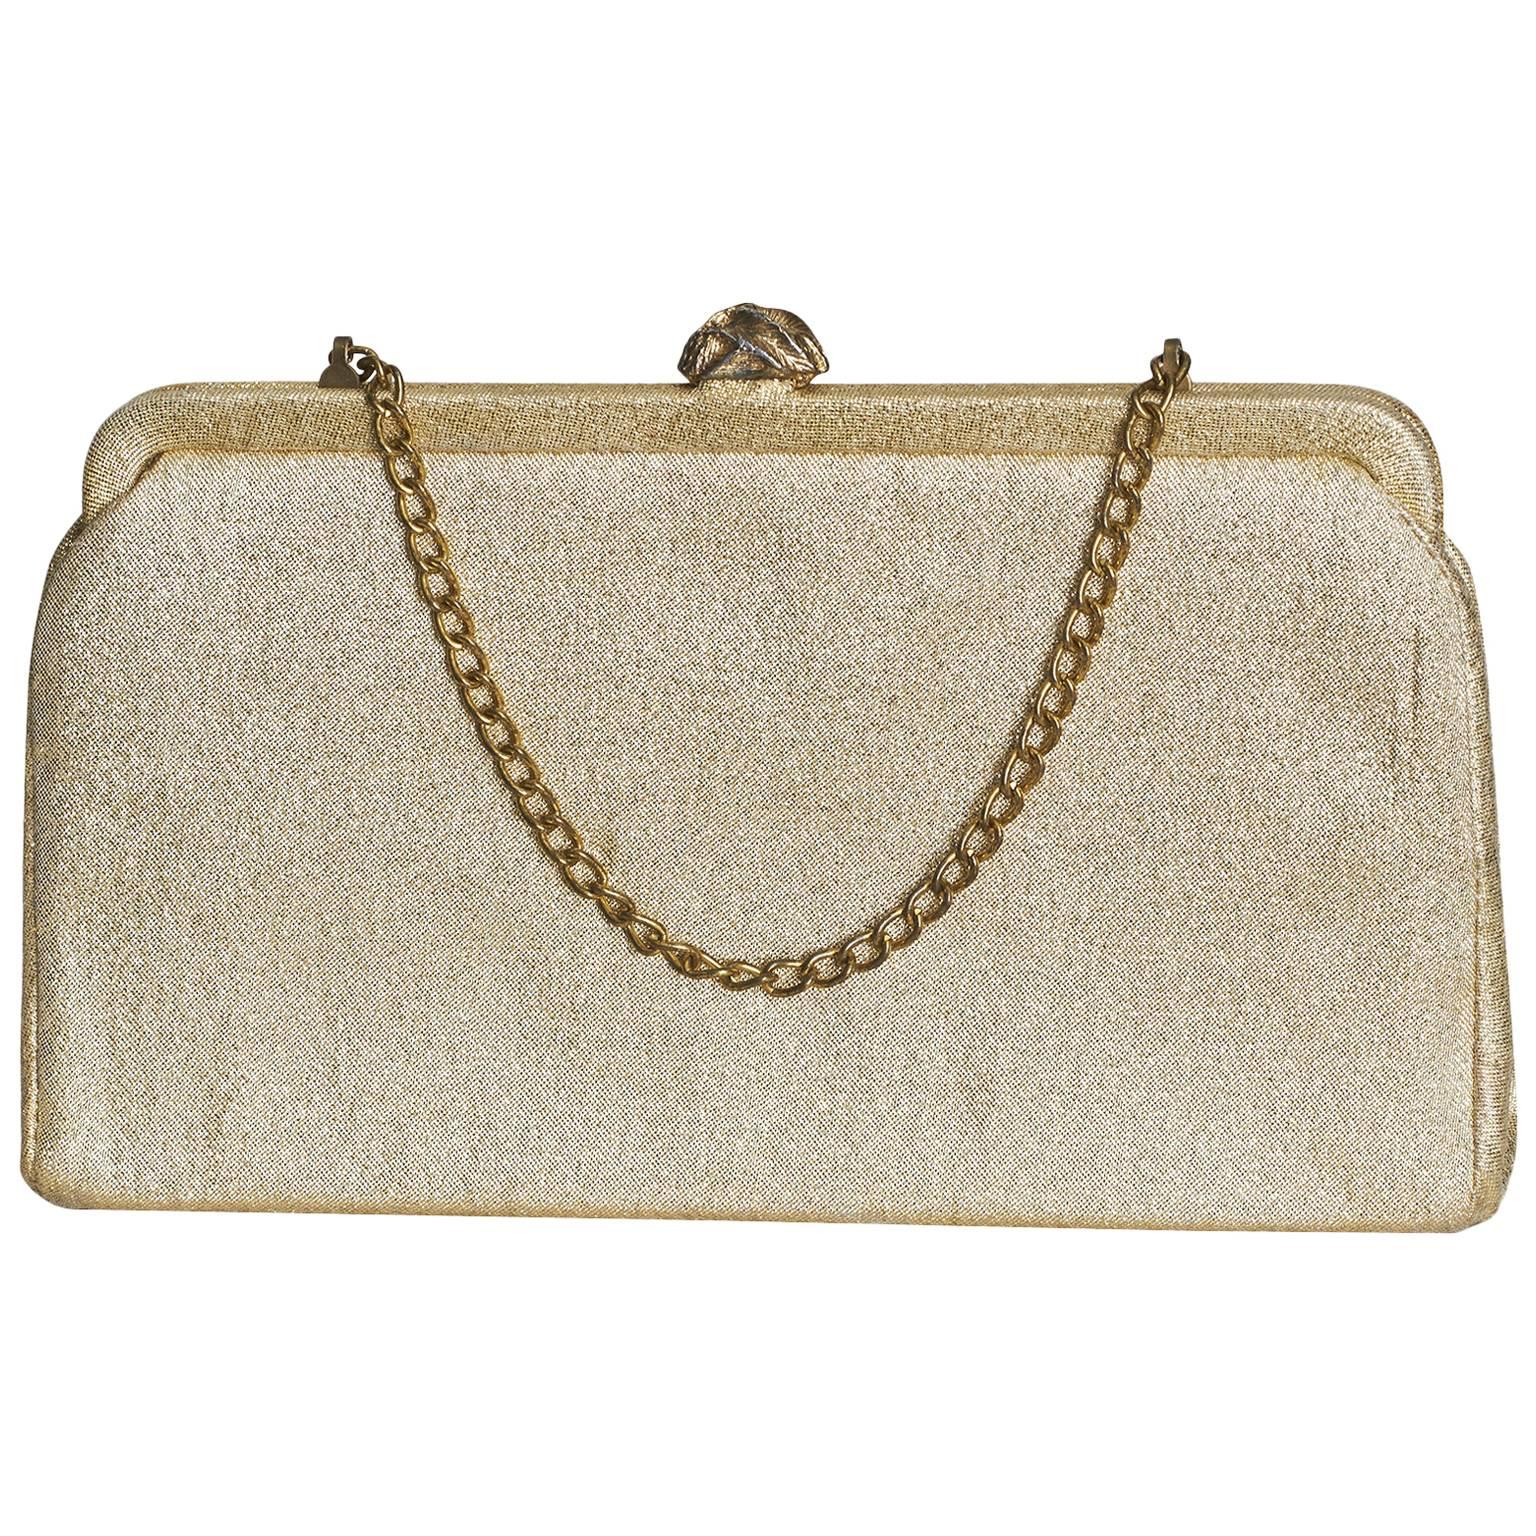 1950's Golden Sparkling Clutch Bag For Sale